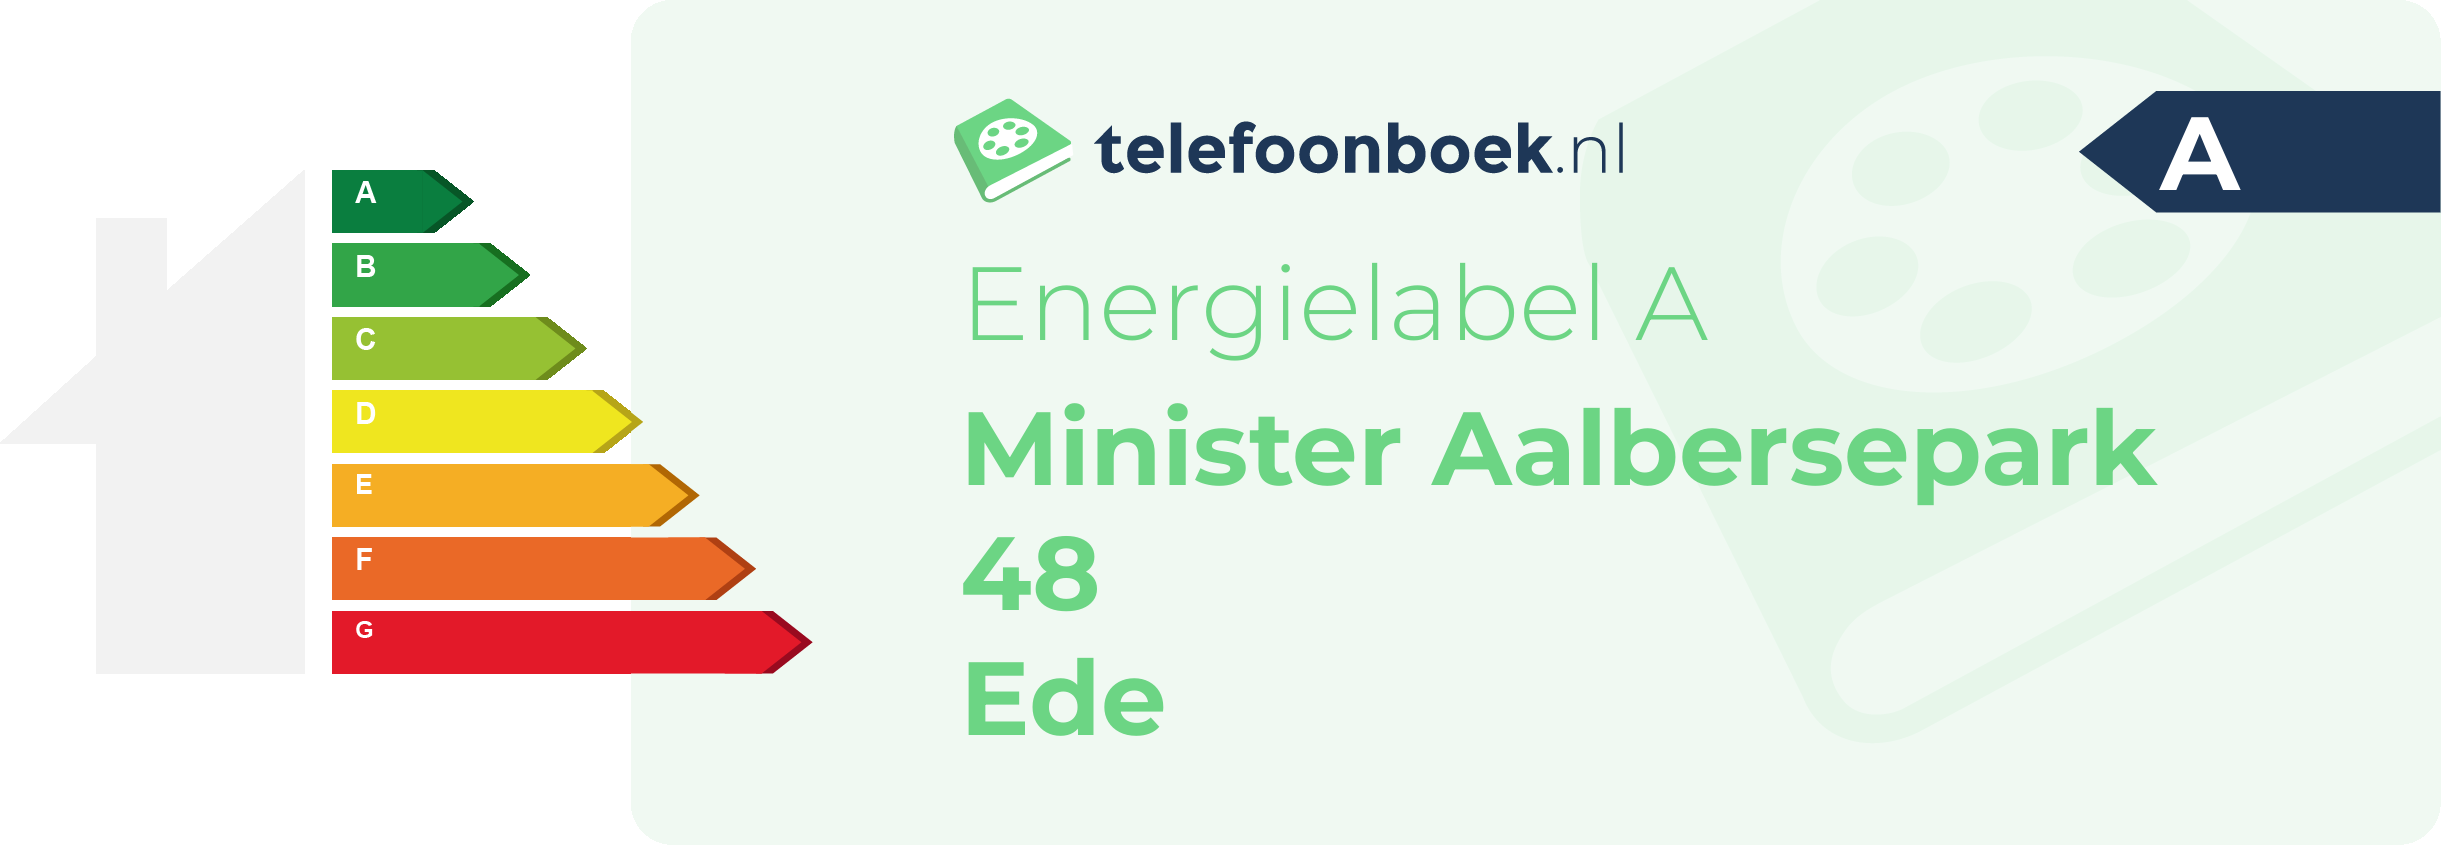 Energielabel Minister Aalbersepark 48 Ede